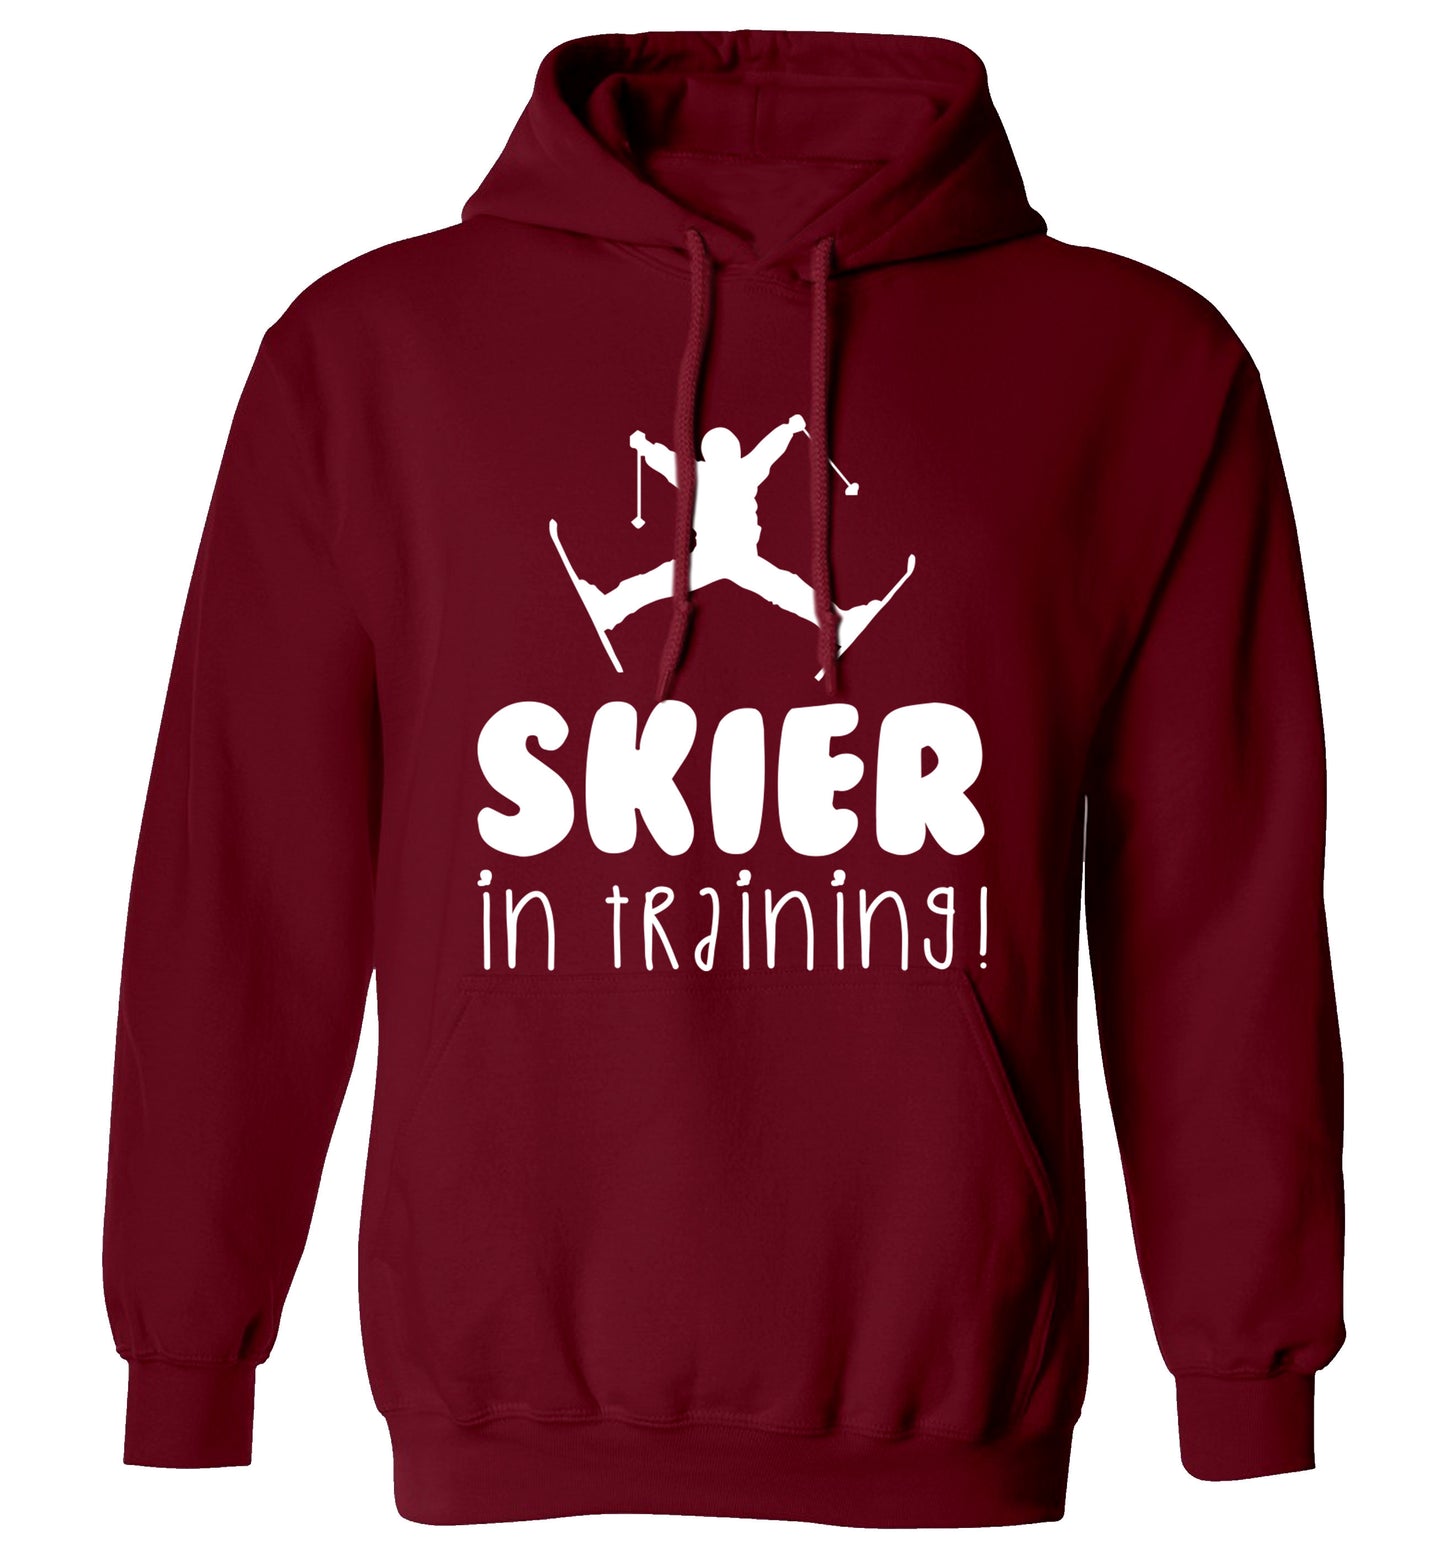 Skier in training adults unisex maroon hoodie 2XL